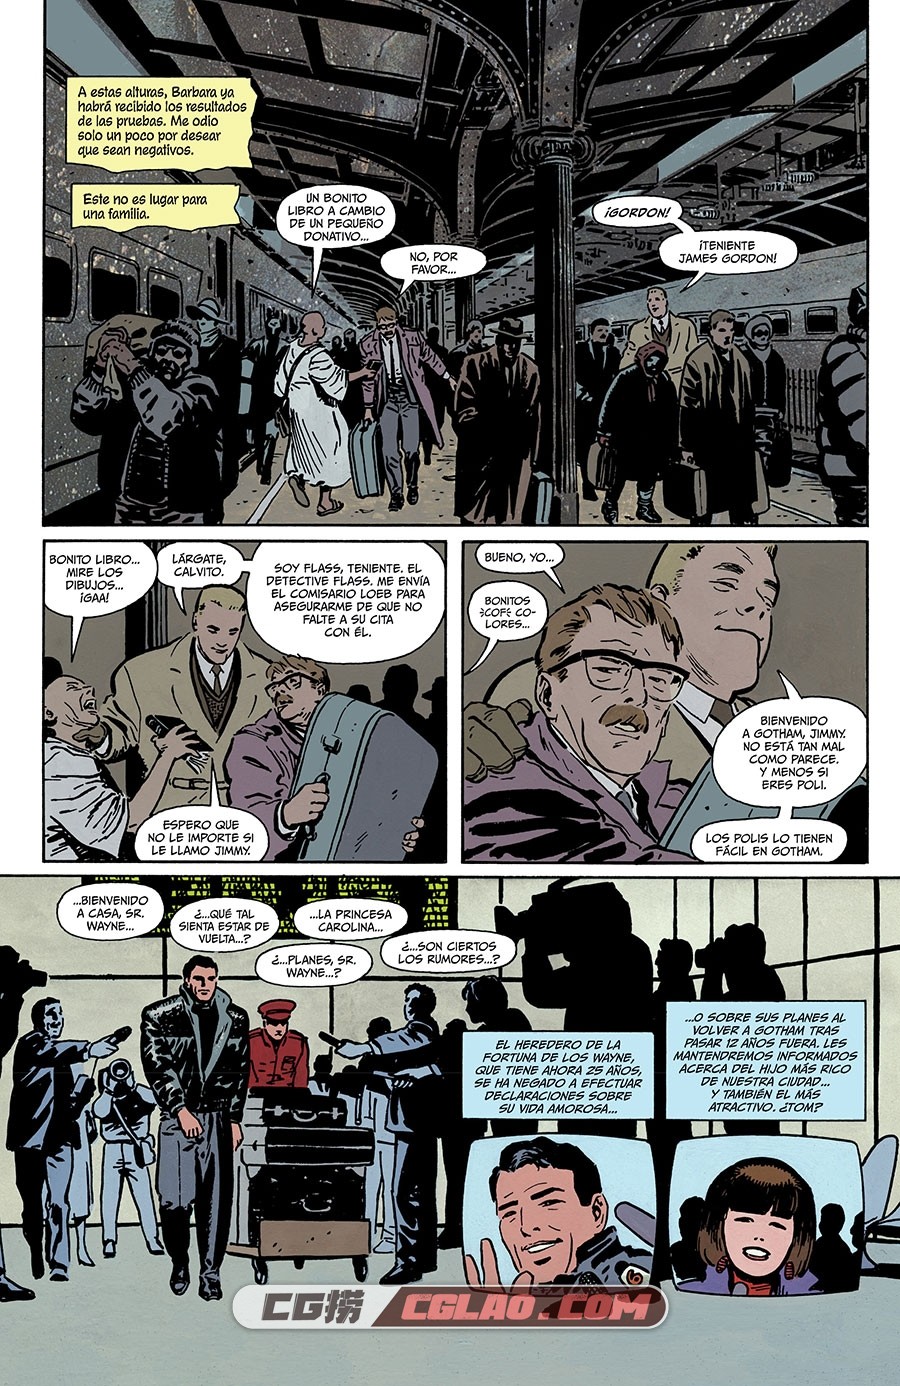 Las Crónicas de Gotham. La leyenda del Caballero Oscuro 漫画 百度网盘,008.jpg